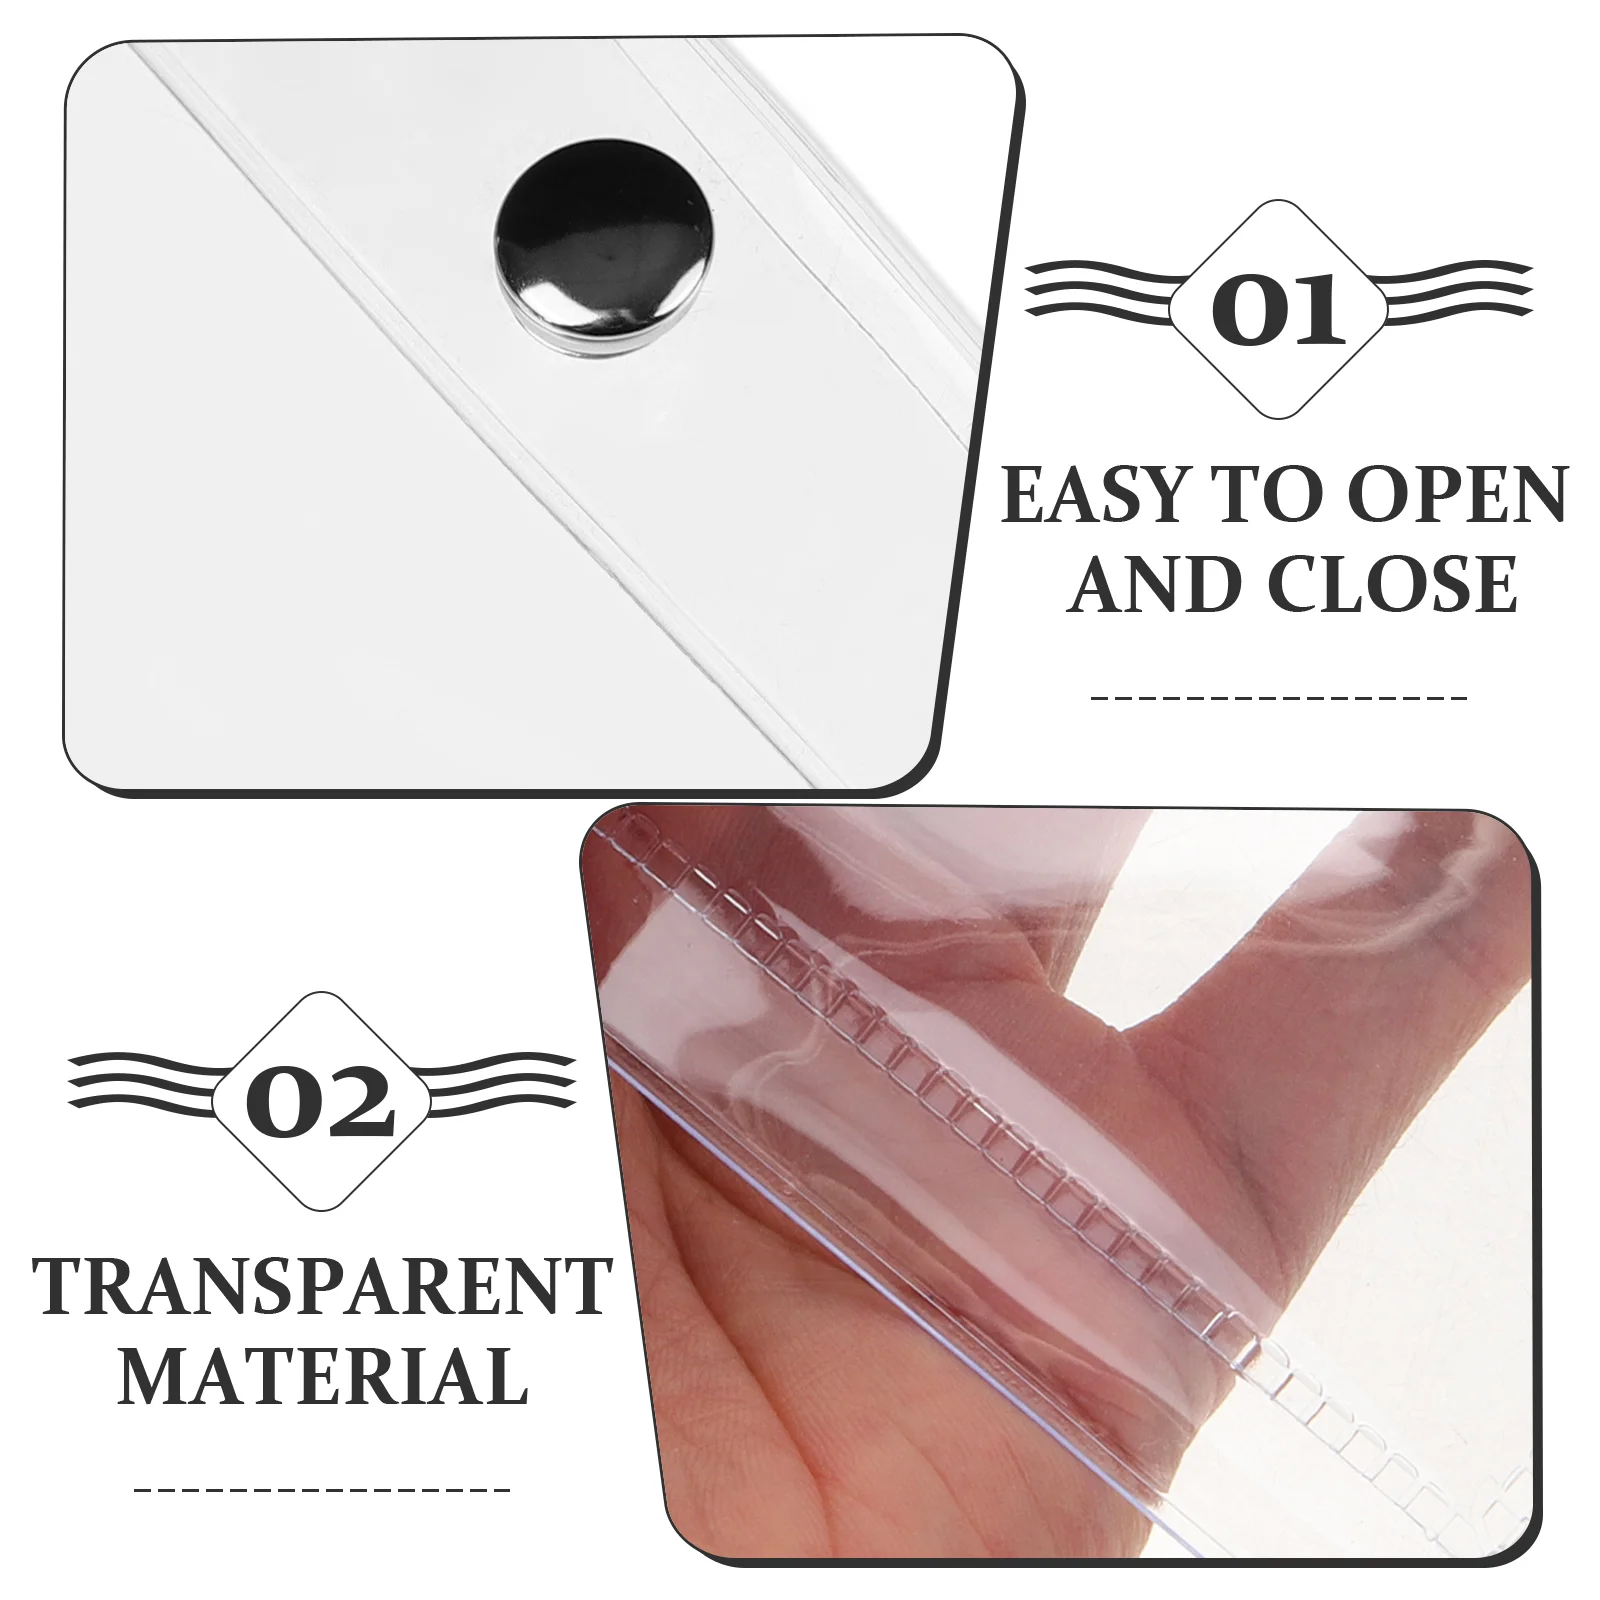 Transparent Purse Transparent Wallet Travel Toiletry Bag Purse Keychain Change for Case Pouch Pvc Aid Float